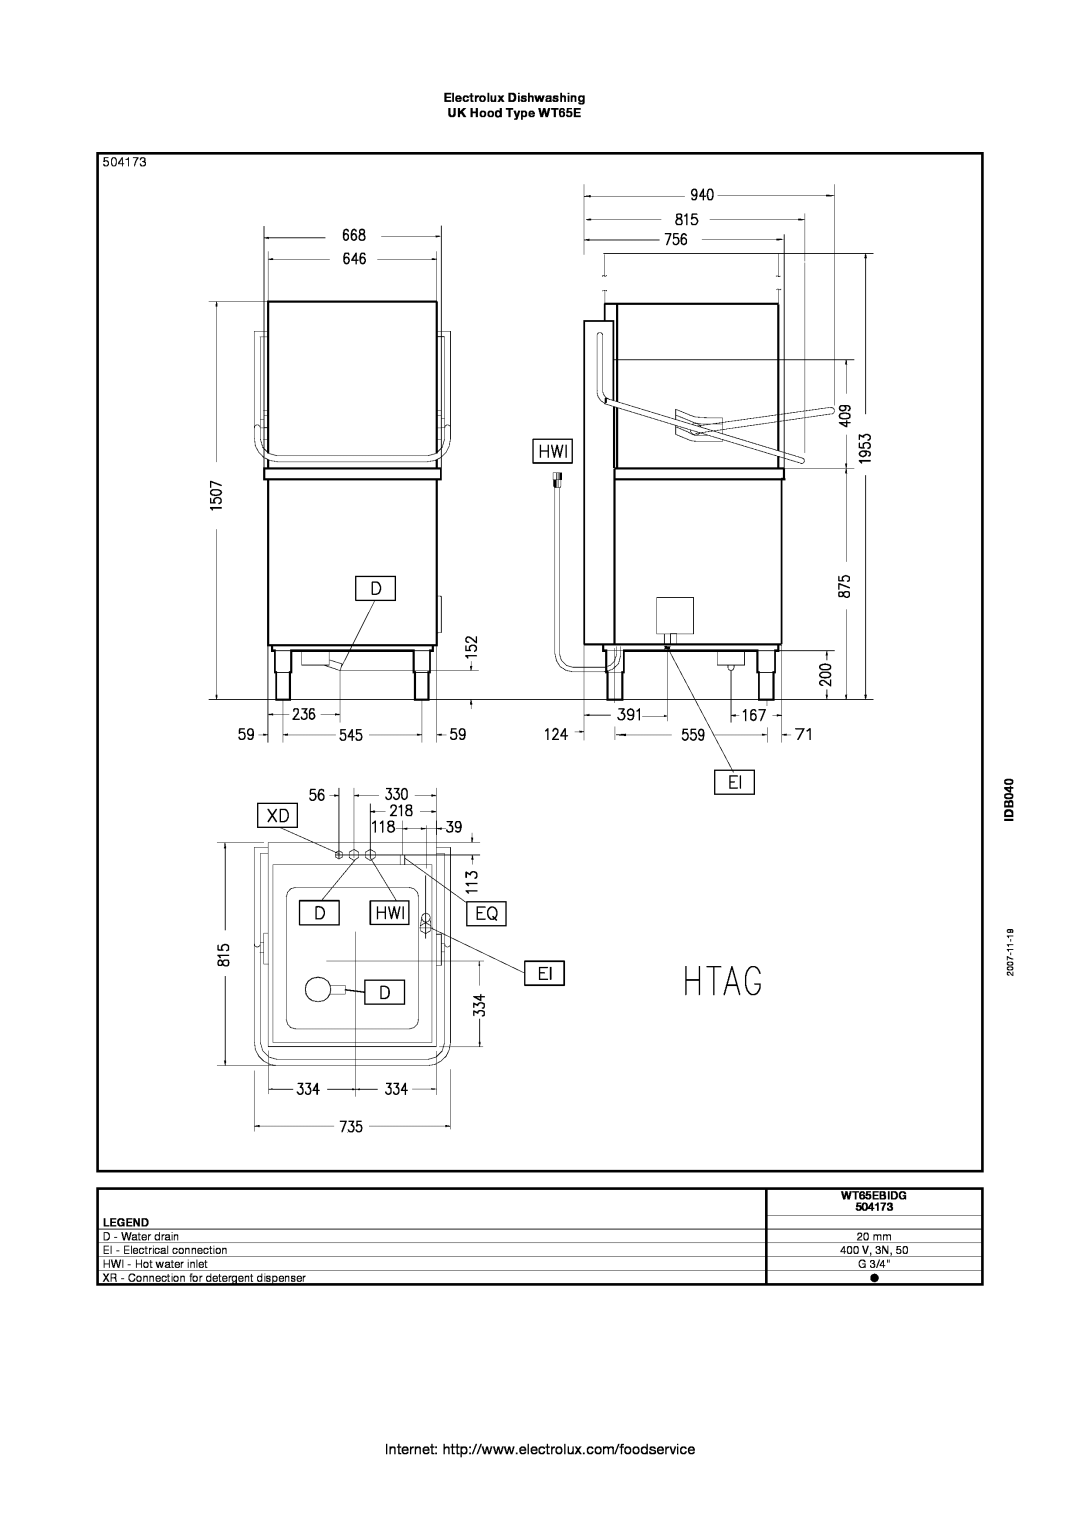 Electrolux manual 504173, Electrolux Dishwashing UK Hood Type WT65E, IDB040, WT65EBIDG, 2007-11-19 